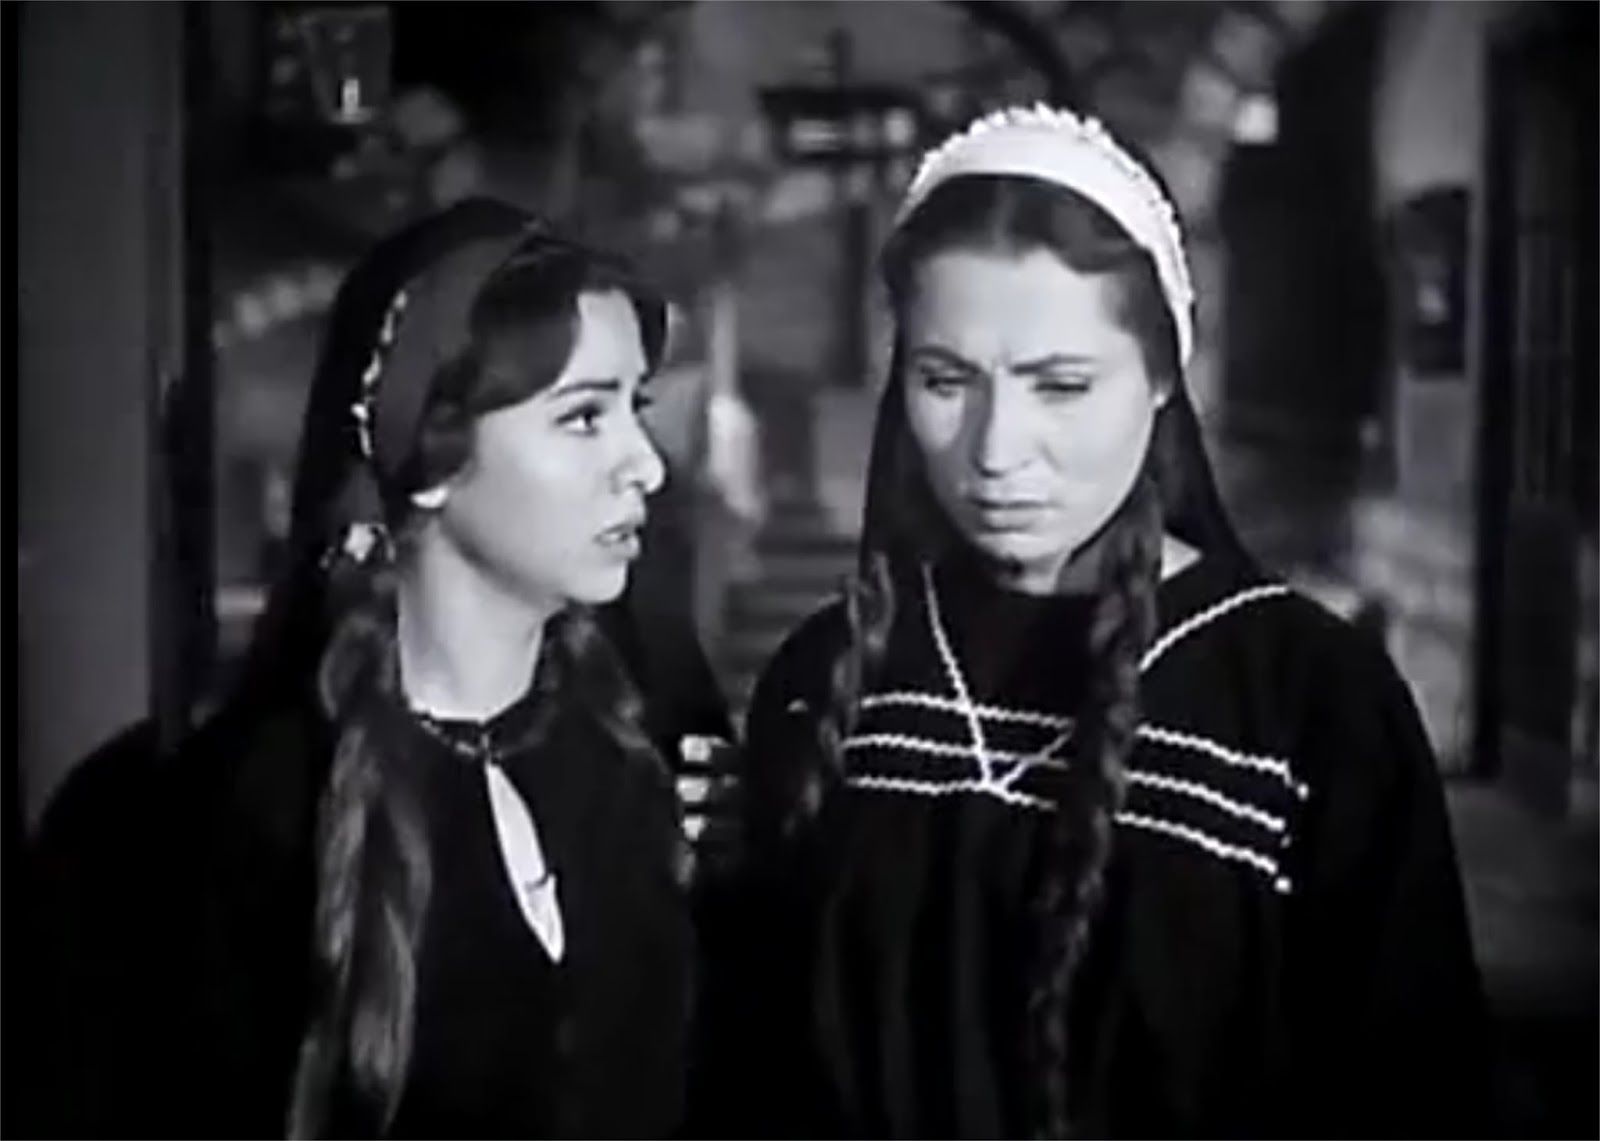 مشهد من فيلم دعاء الكروان يعبر عن جرائم الشرف 